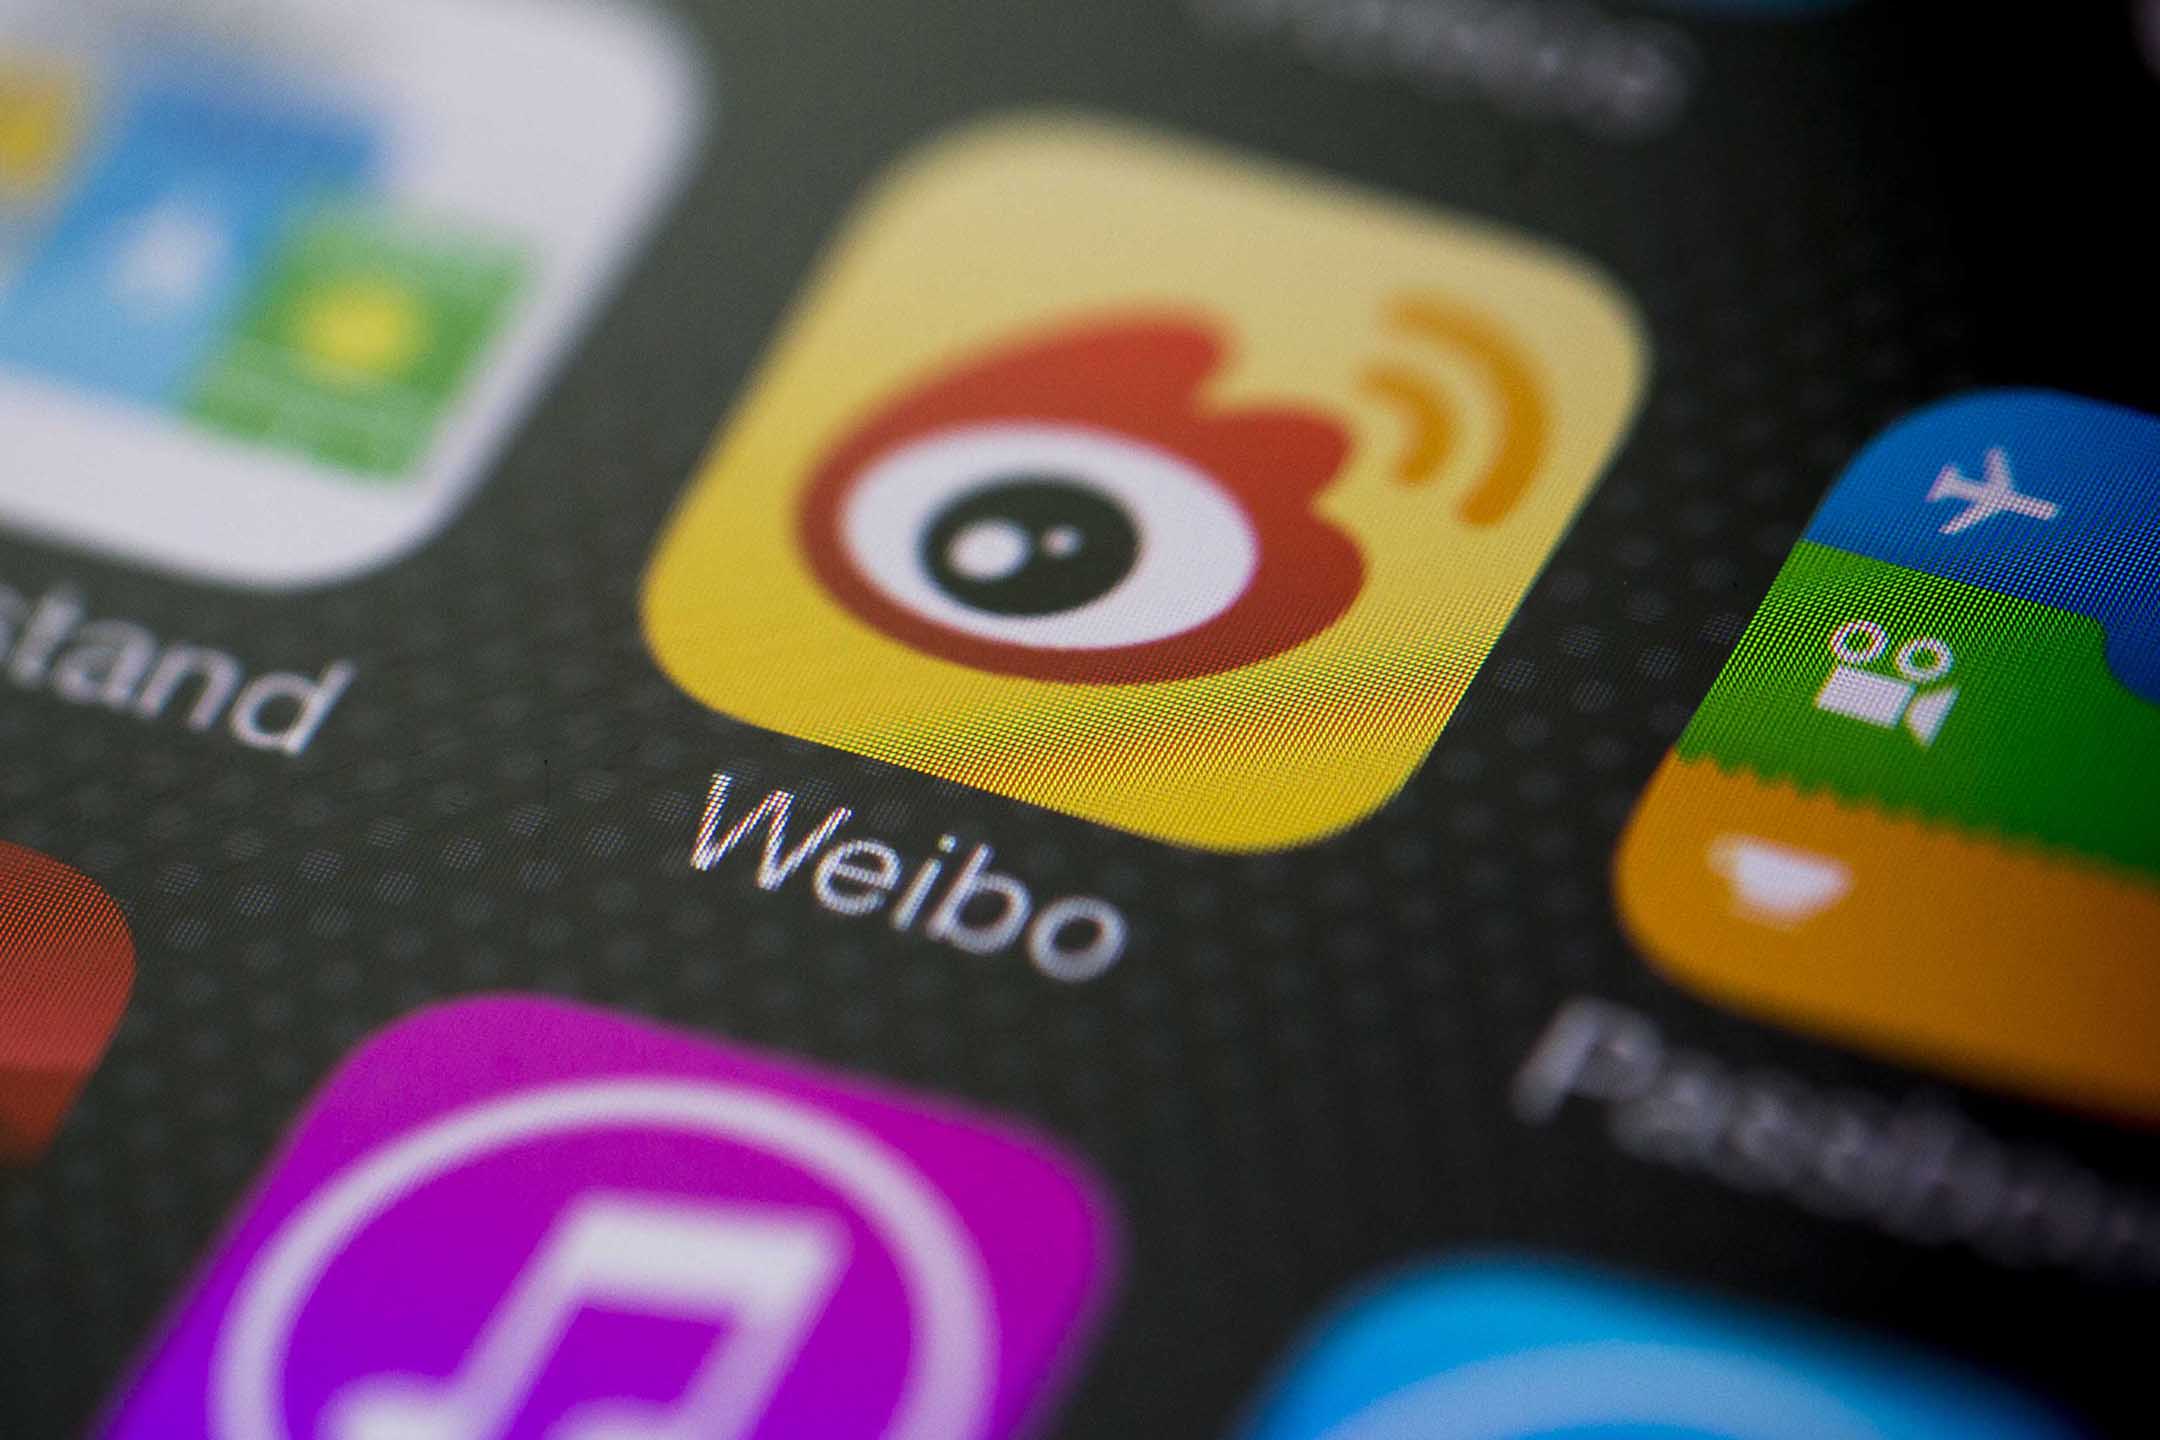 Morning Post Offizieller iOS16-Push / iPhone 14 Akkukapazität ausgesetzt / Weibo verfügt über extreme Star-Jagd-Bemerkungen - c6935db424d34ec28971366e87a15761